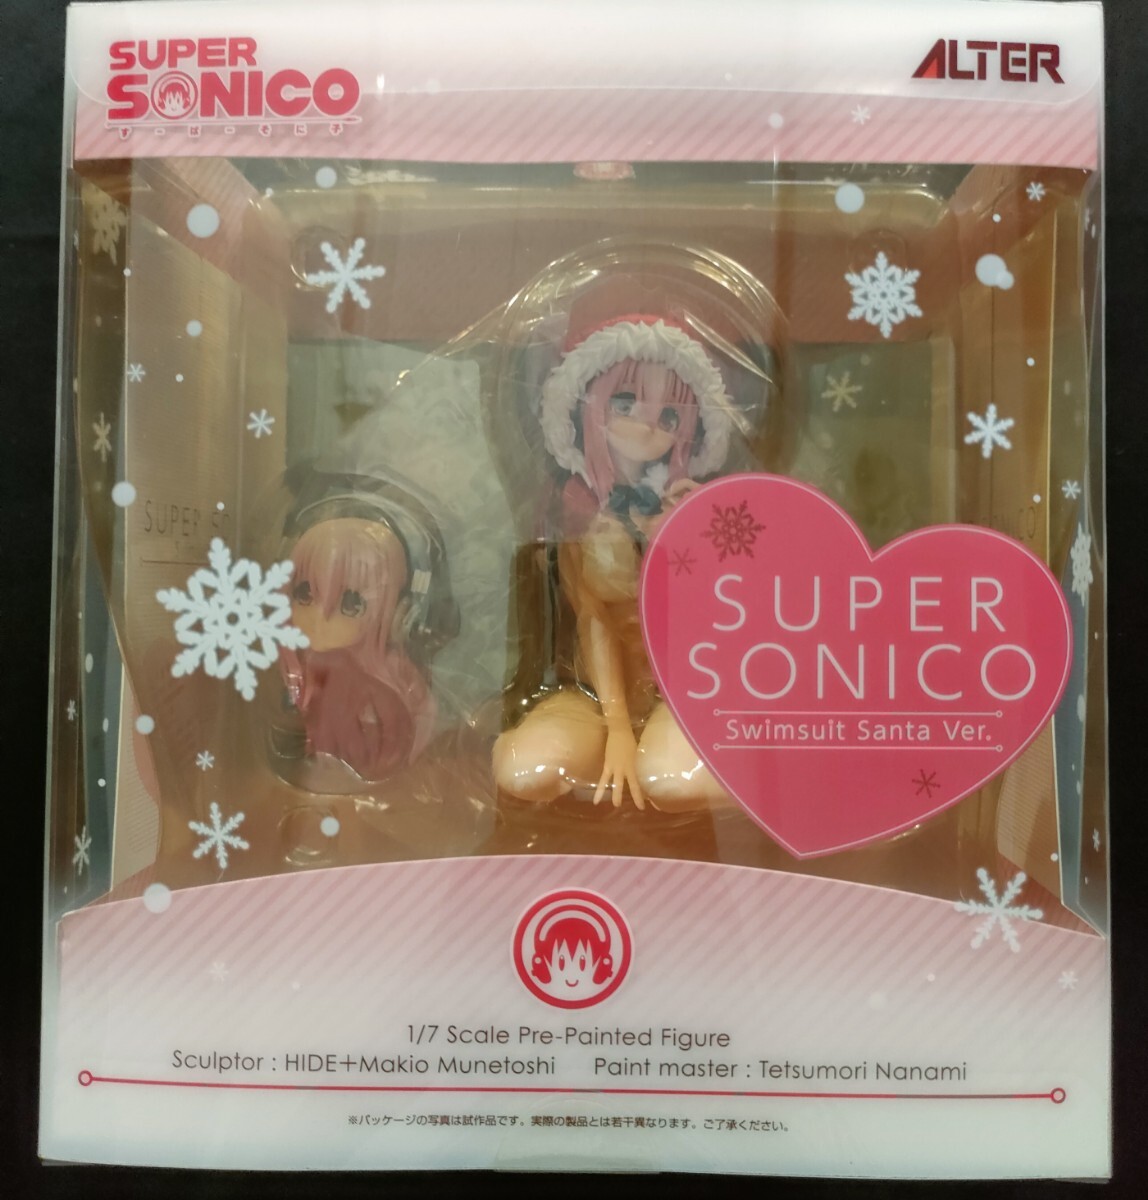 [1 иен старт ]NITRO SUPER SONIC Super Sonico купальный костюм солнечный taVer. 1/7 конечный продукт фигурка [aruta-] прекрасный товар 